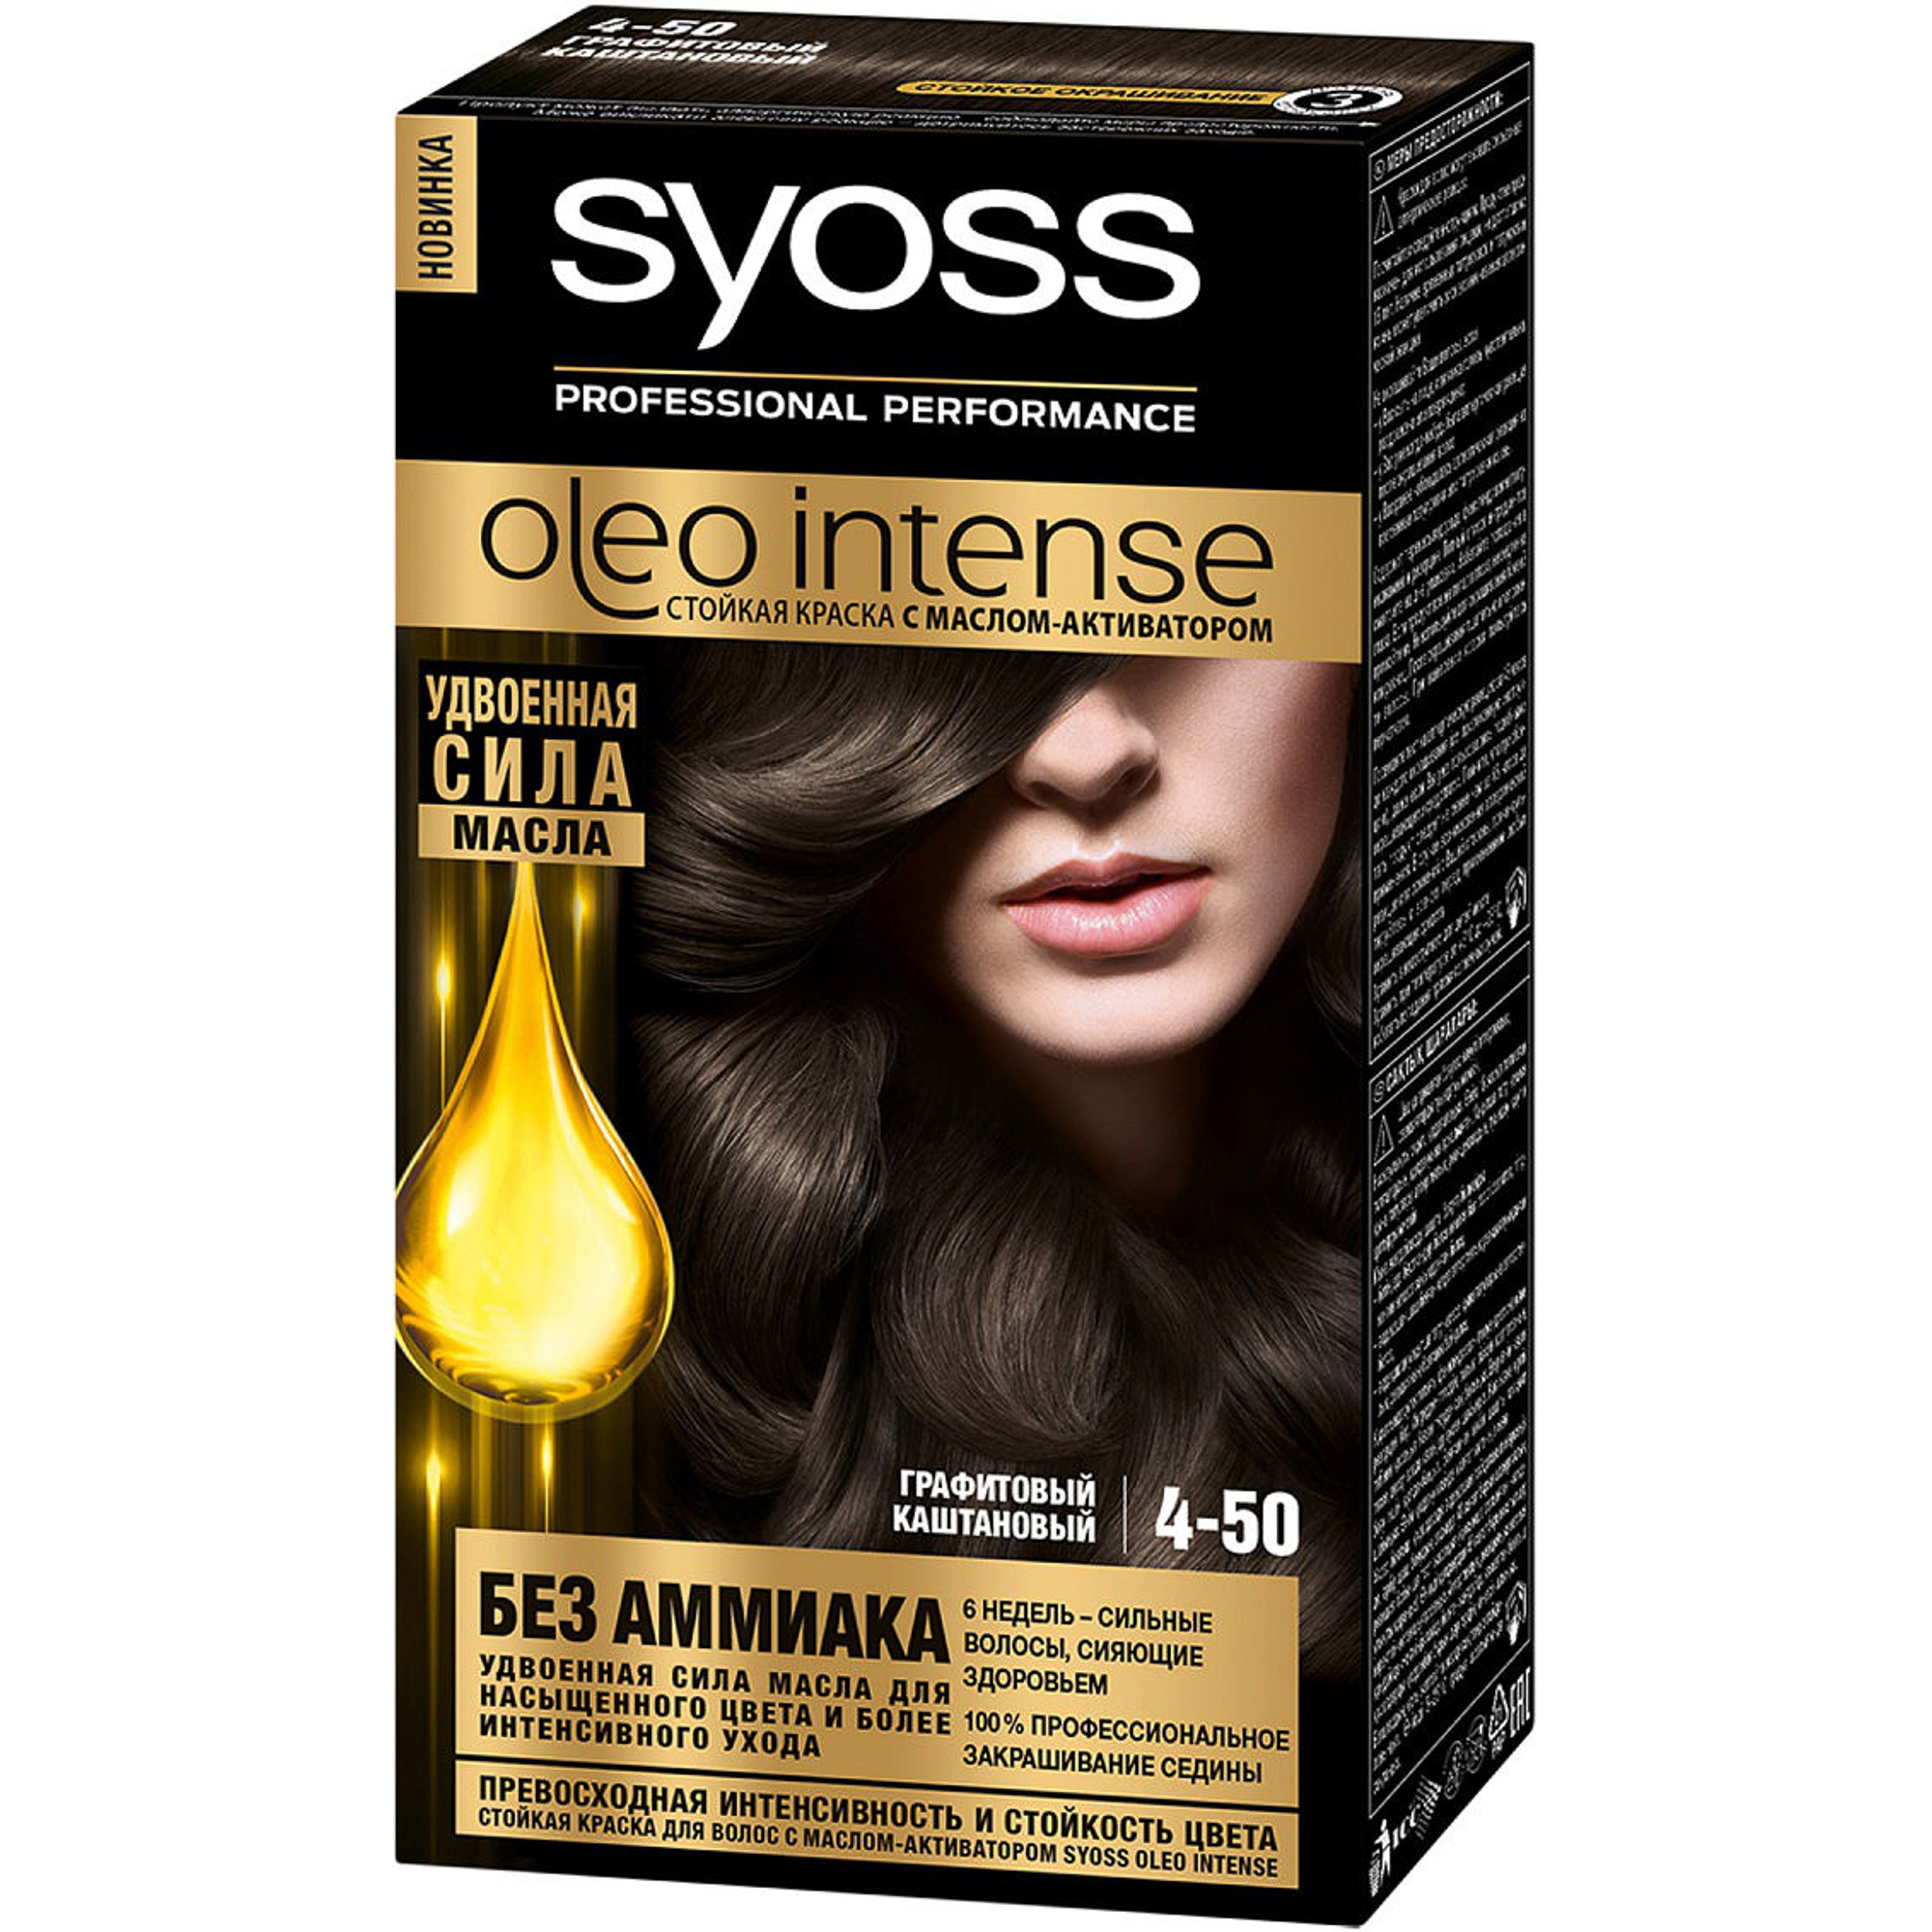 Краска для волос Syoss Oleo Intense 4-50 Графитовый каштановый краска для волос syoss color 5 8 ореховый светло каштановый